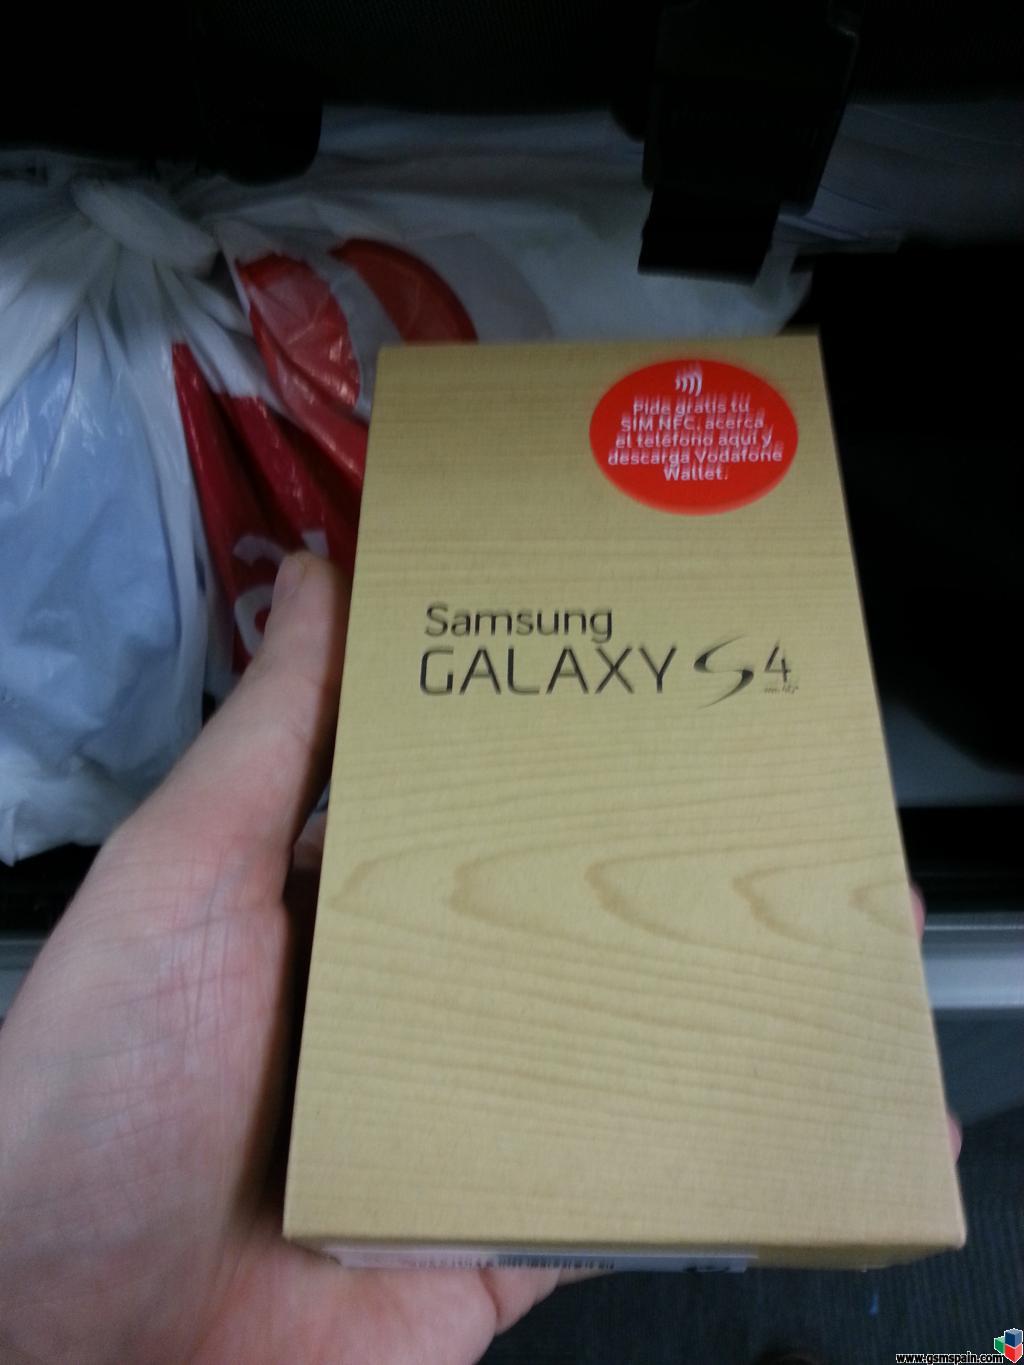 [VENDO] Escucho ofertas por un Galaxy S4 I9506 blanco precintado de Vodafone